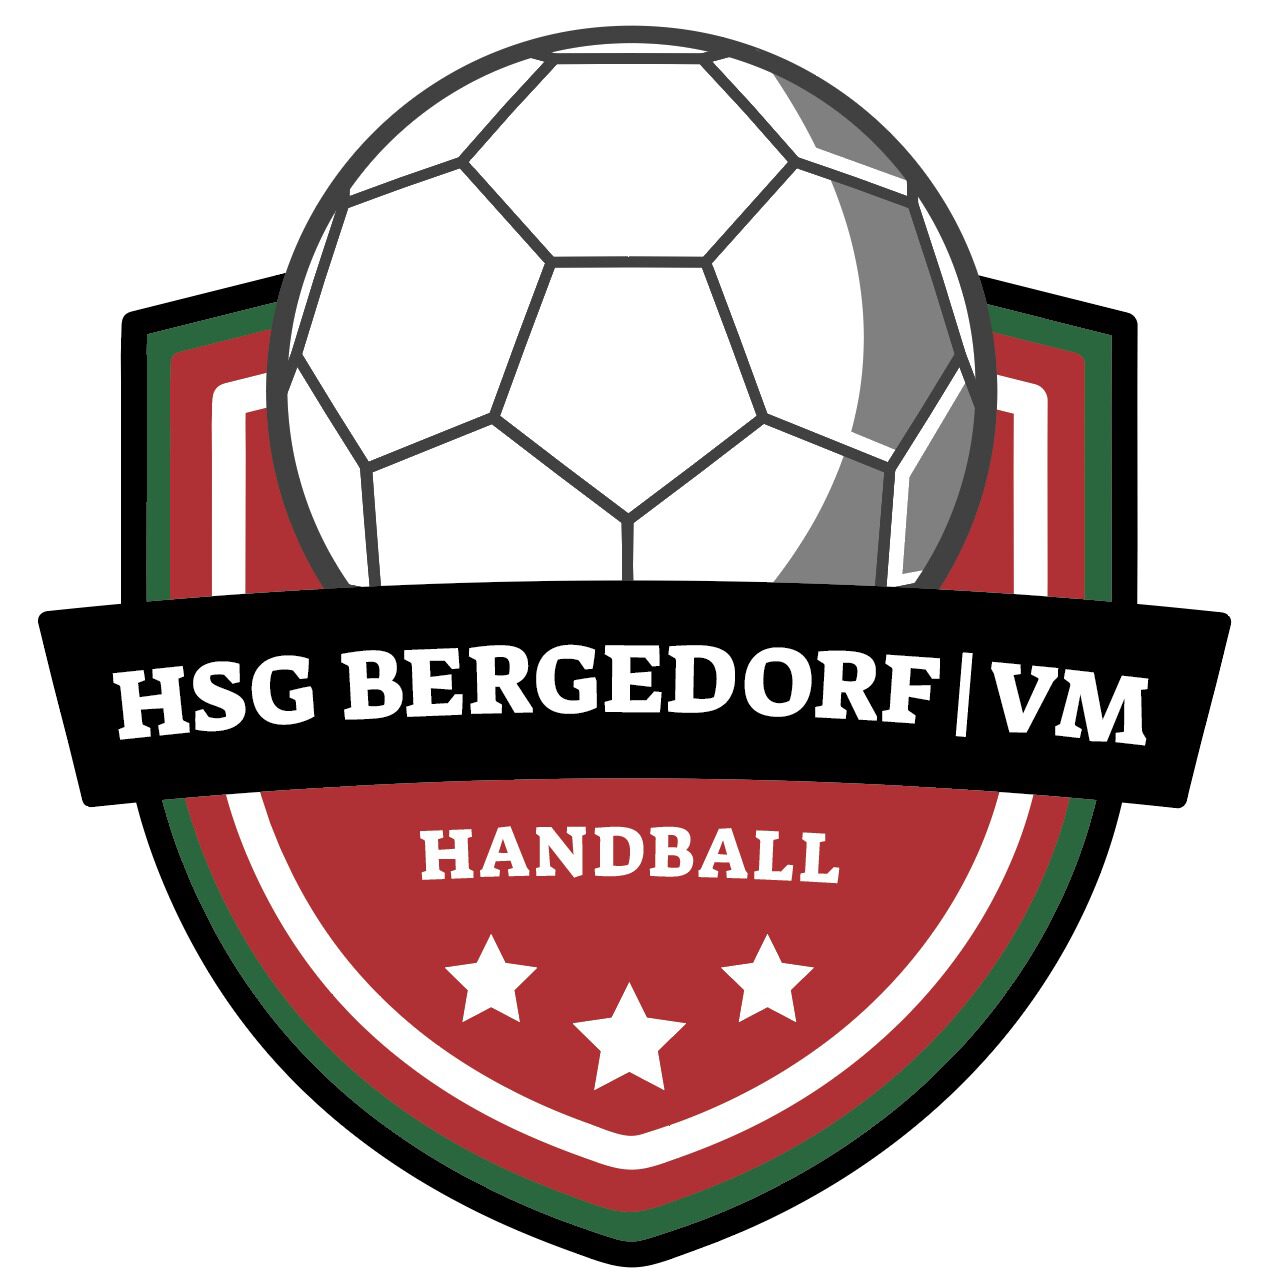 HSG Bergedorf-VM